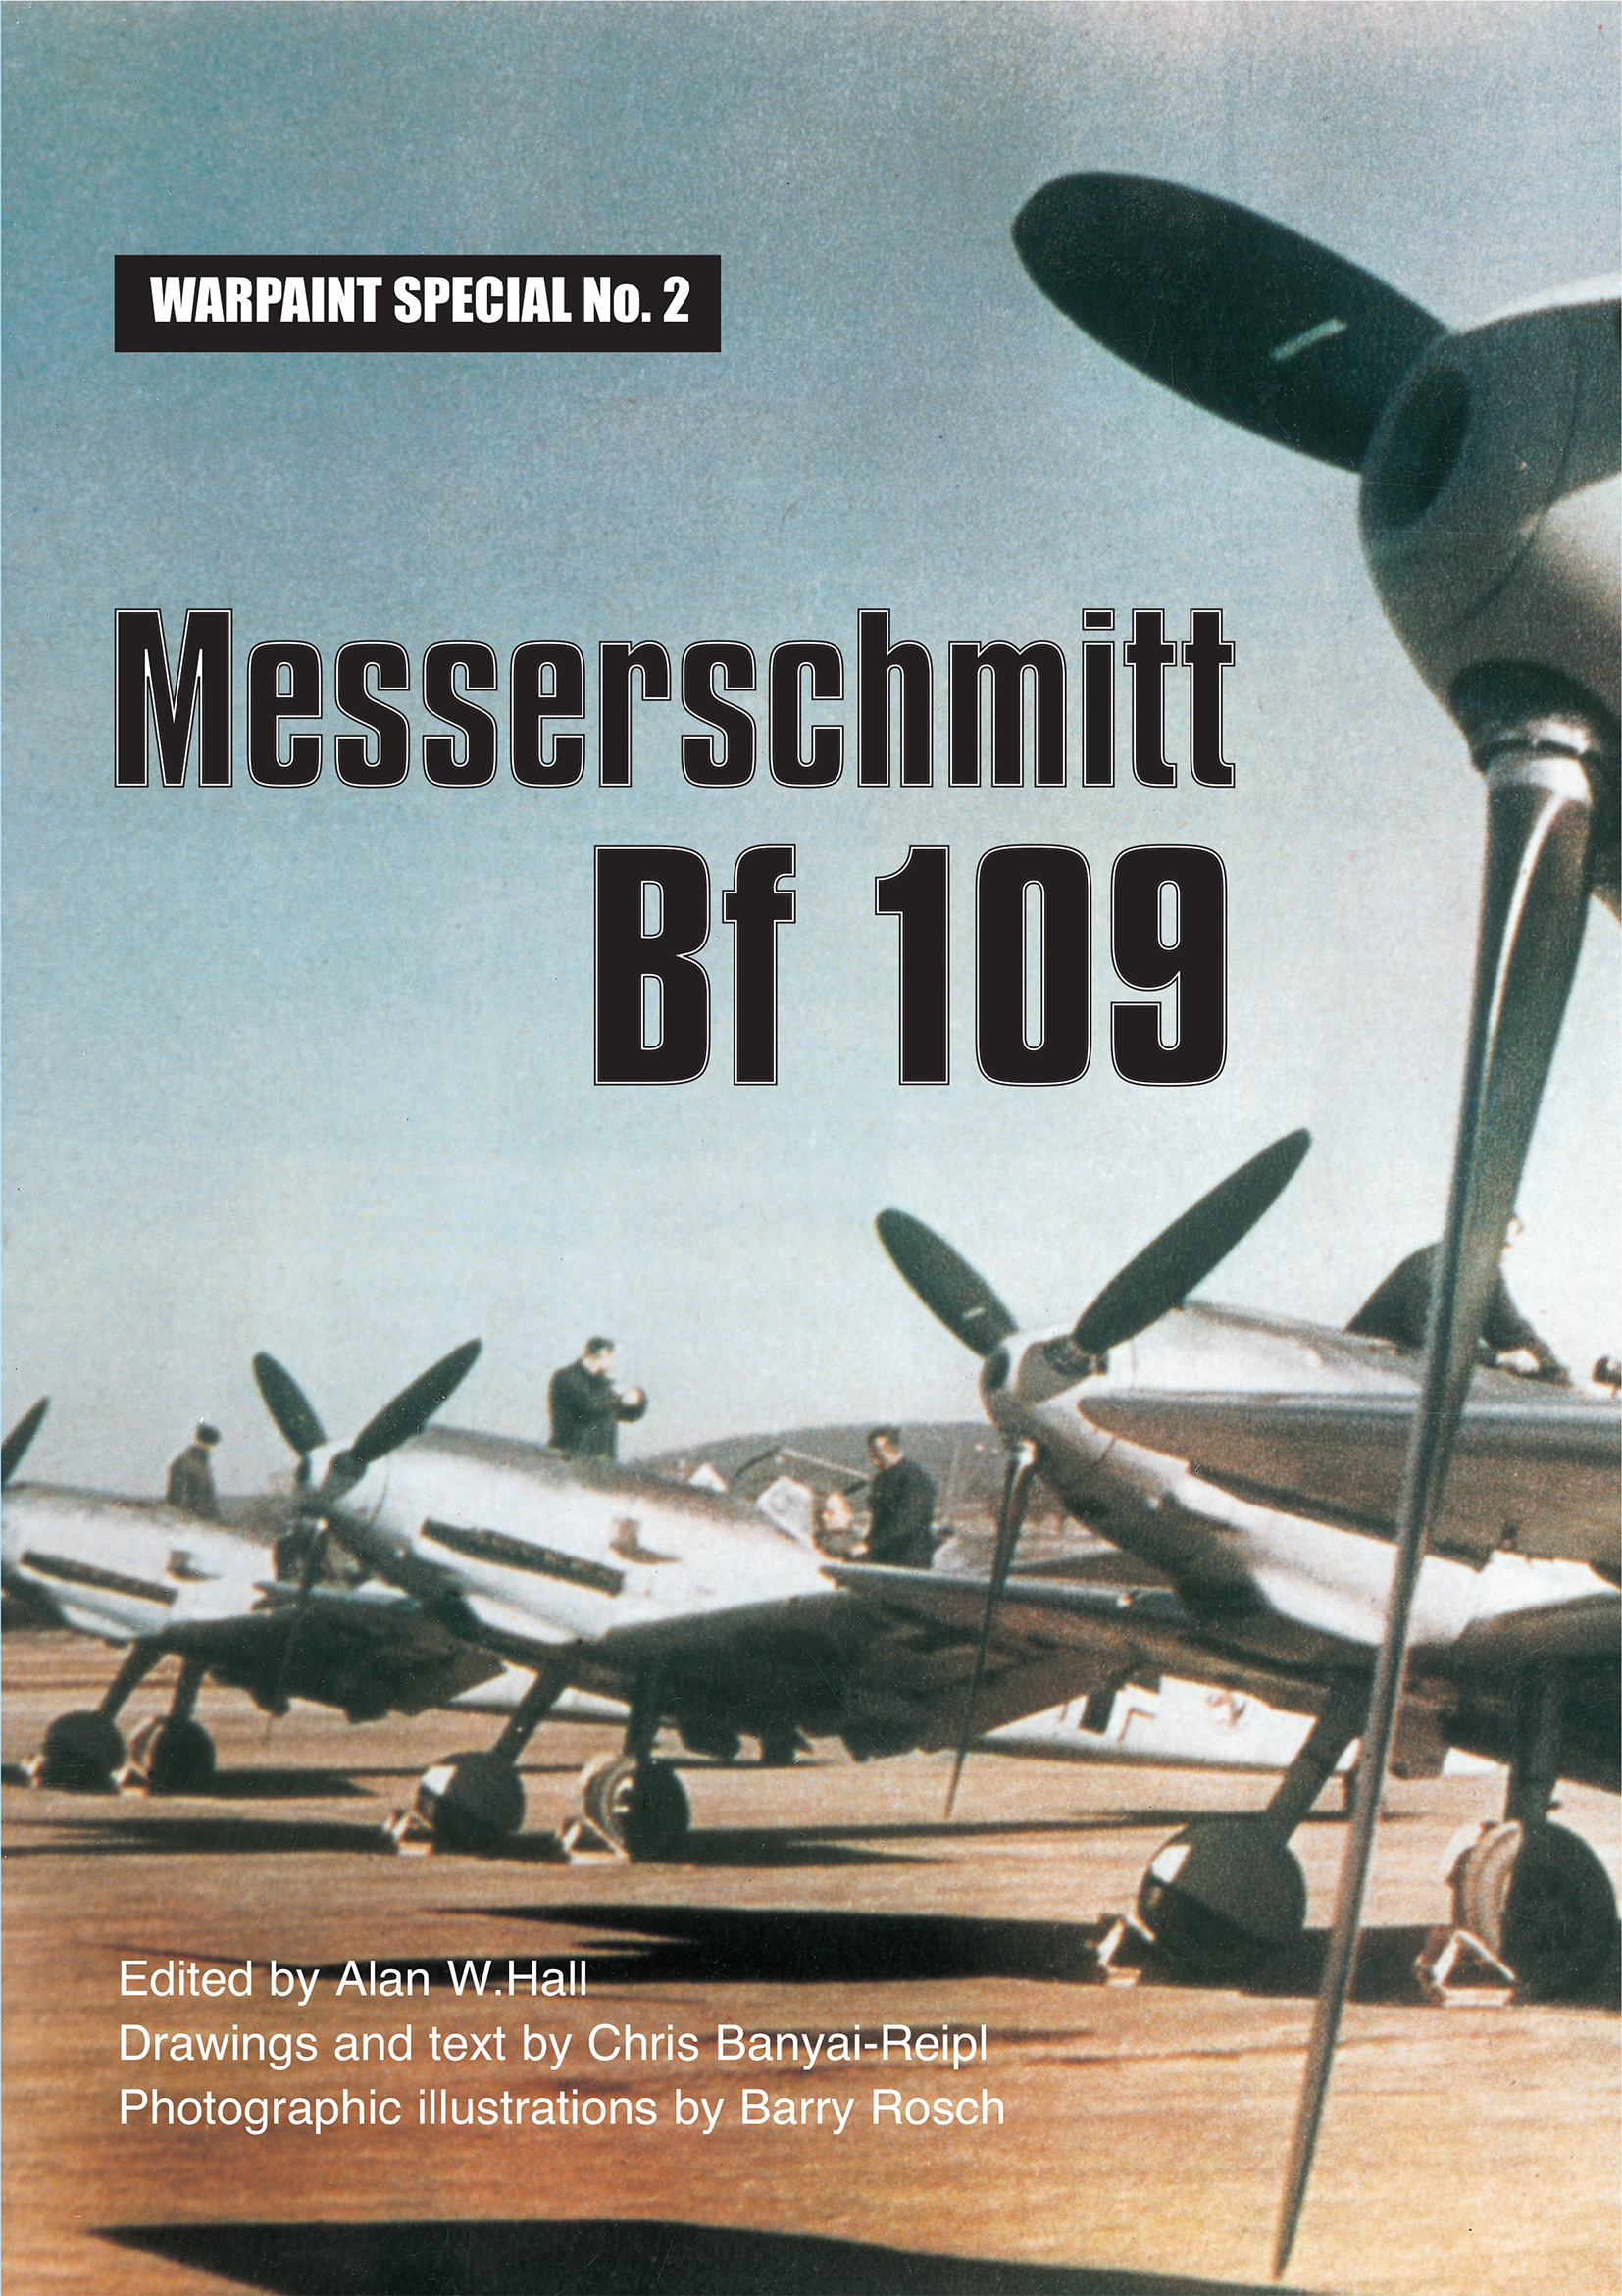 Guideline Publications Ltd Spec No 2 Messerschmitt Bf 109 Alan W Hall 